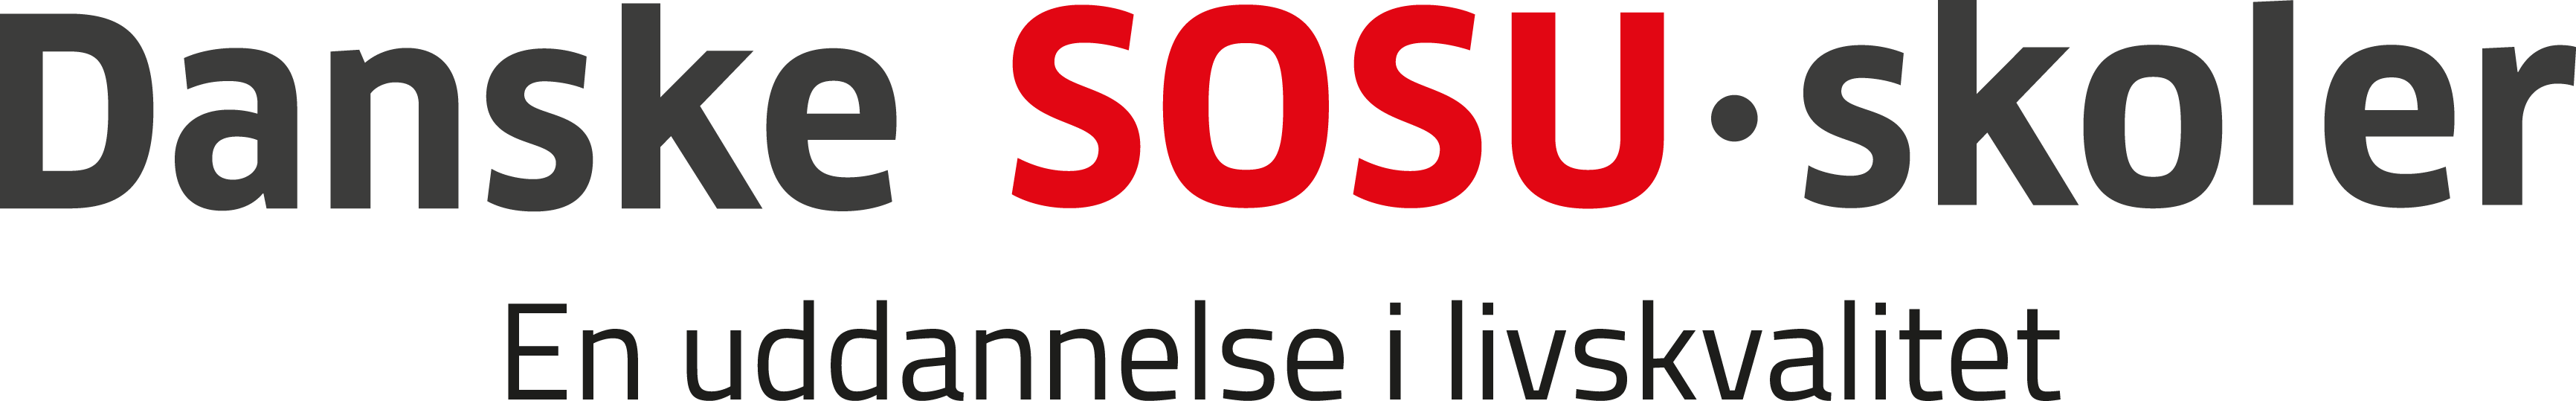 Danske SOSU-skoler